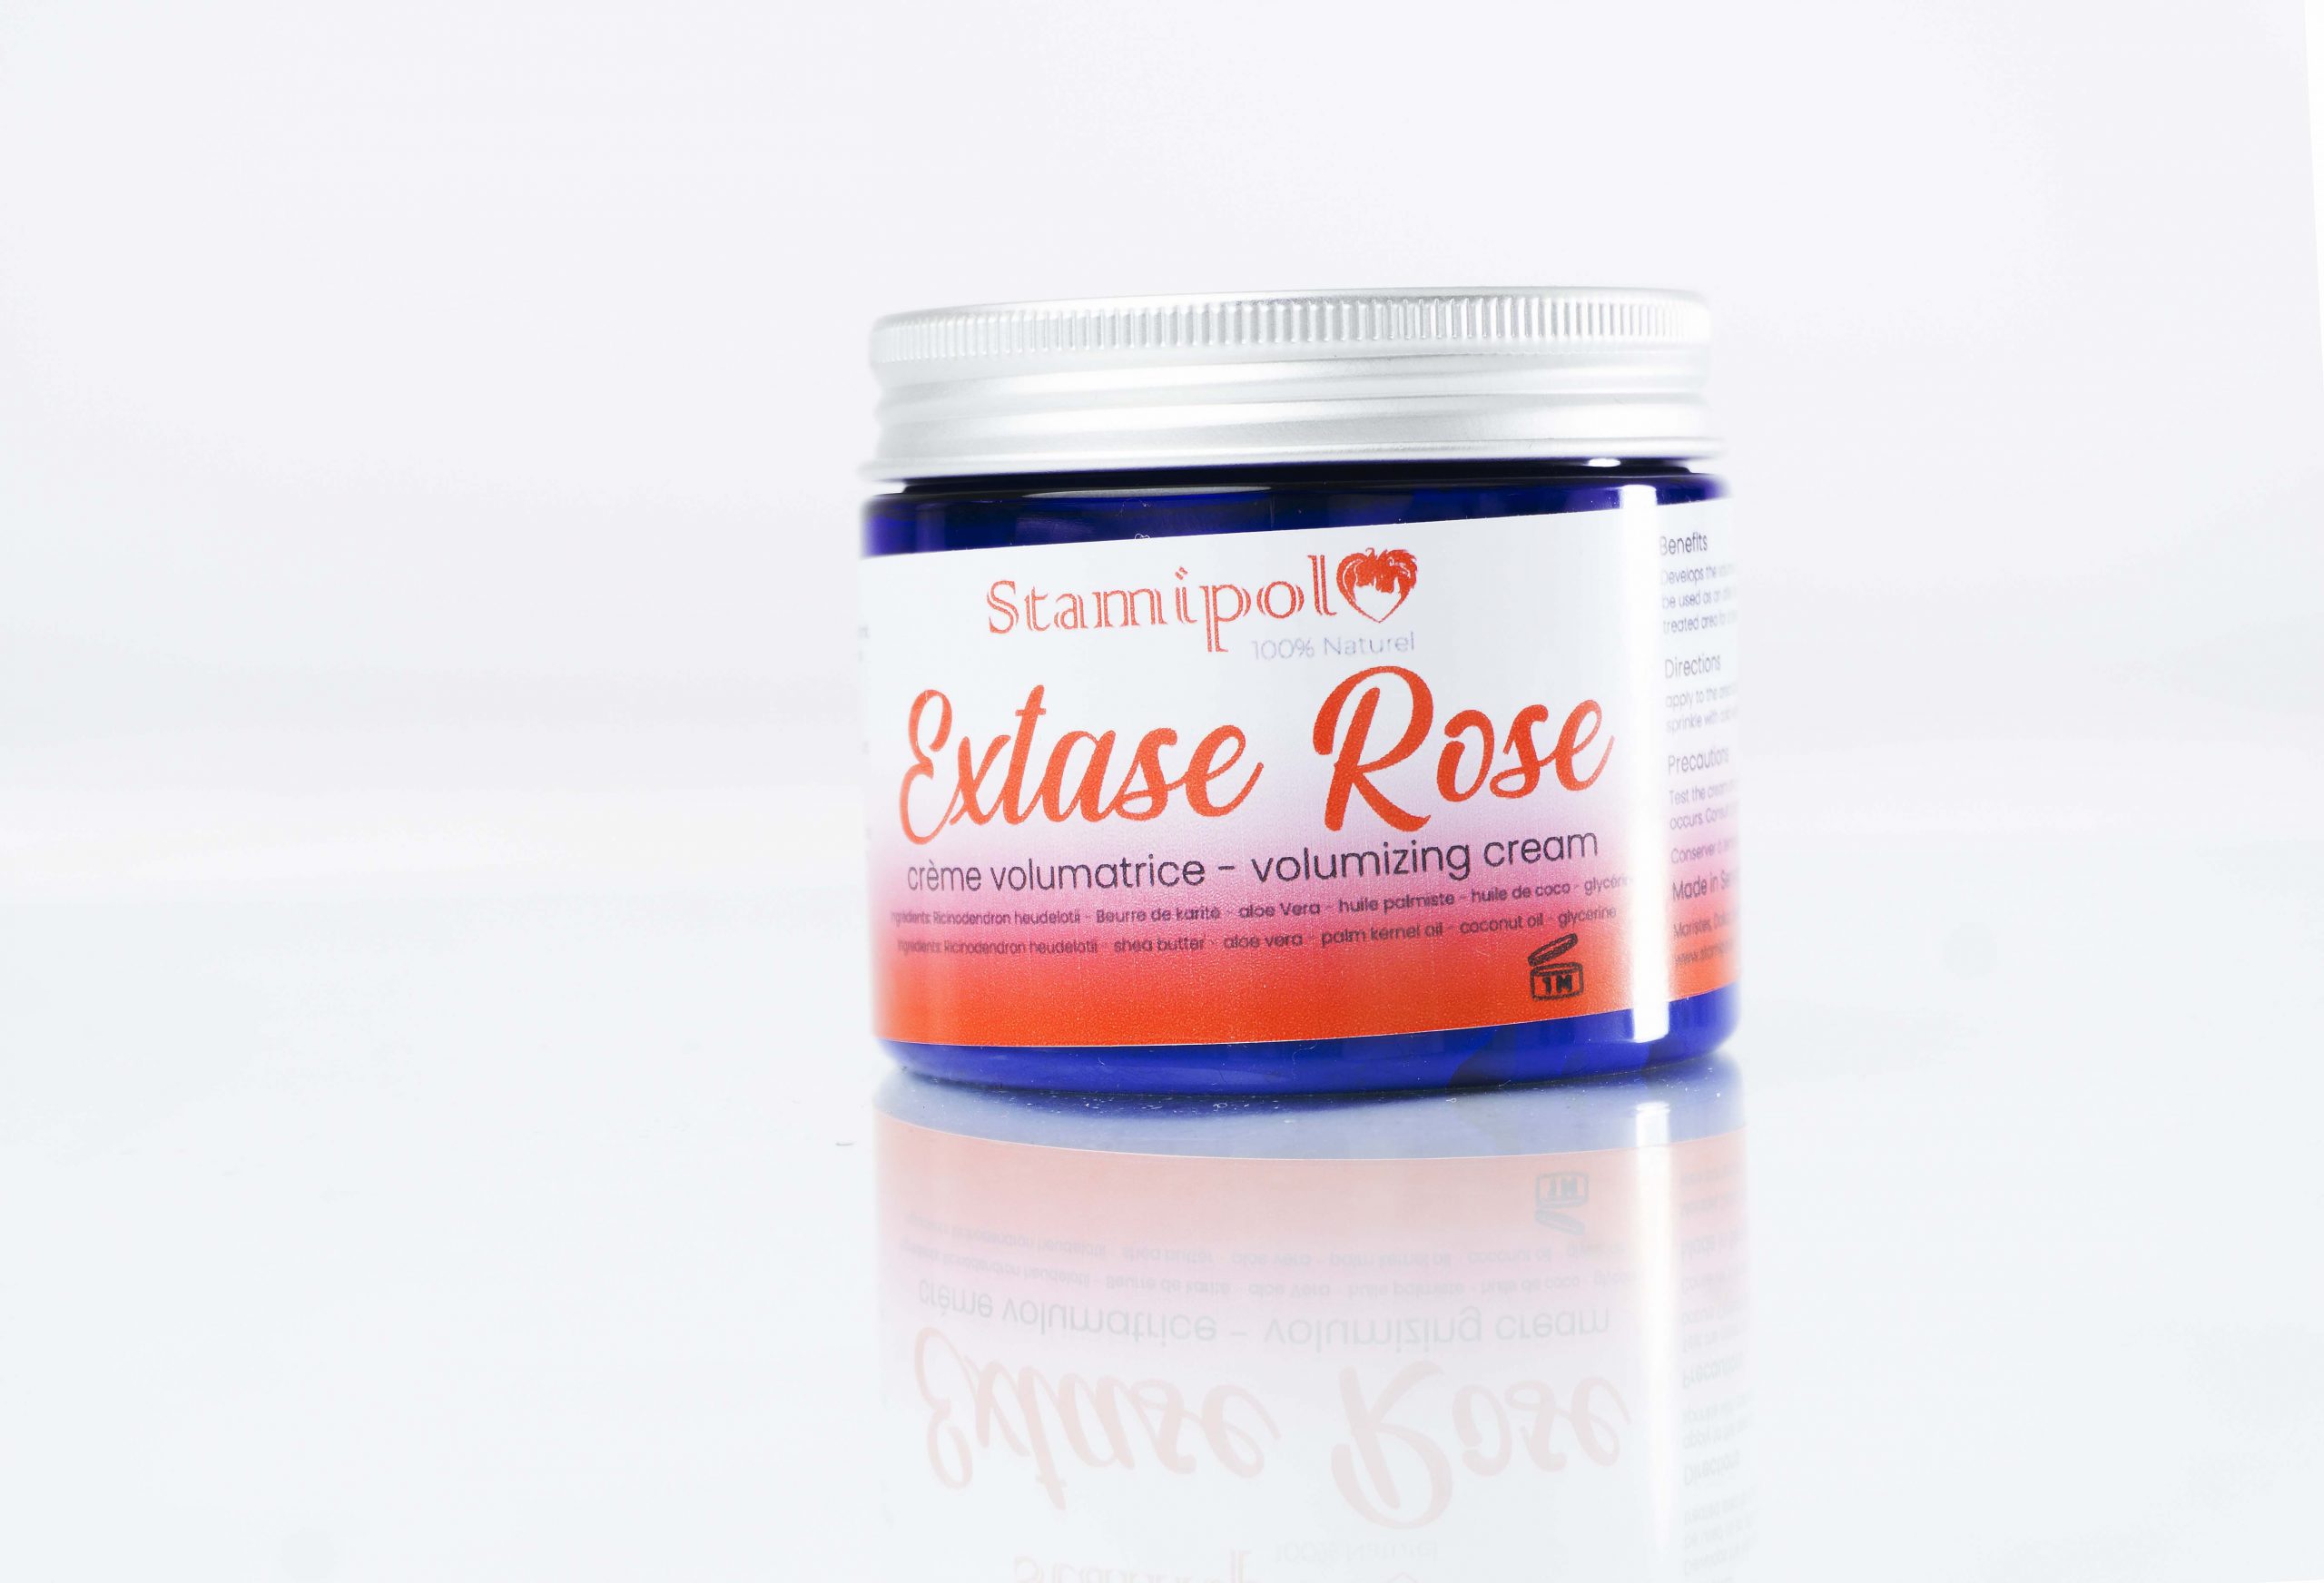 Extase Rose